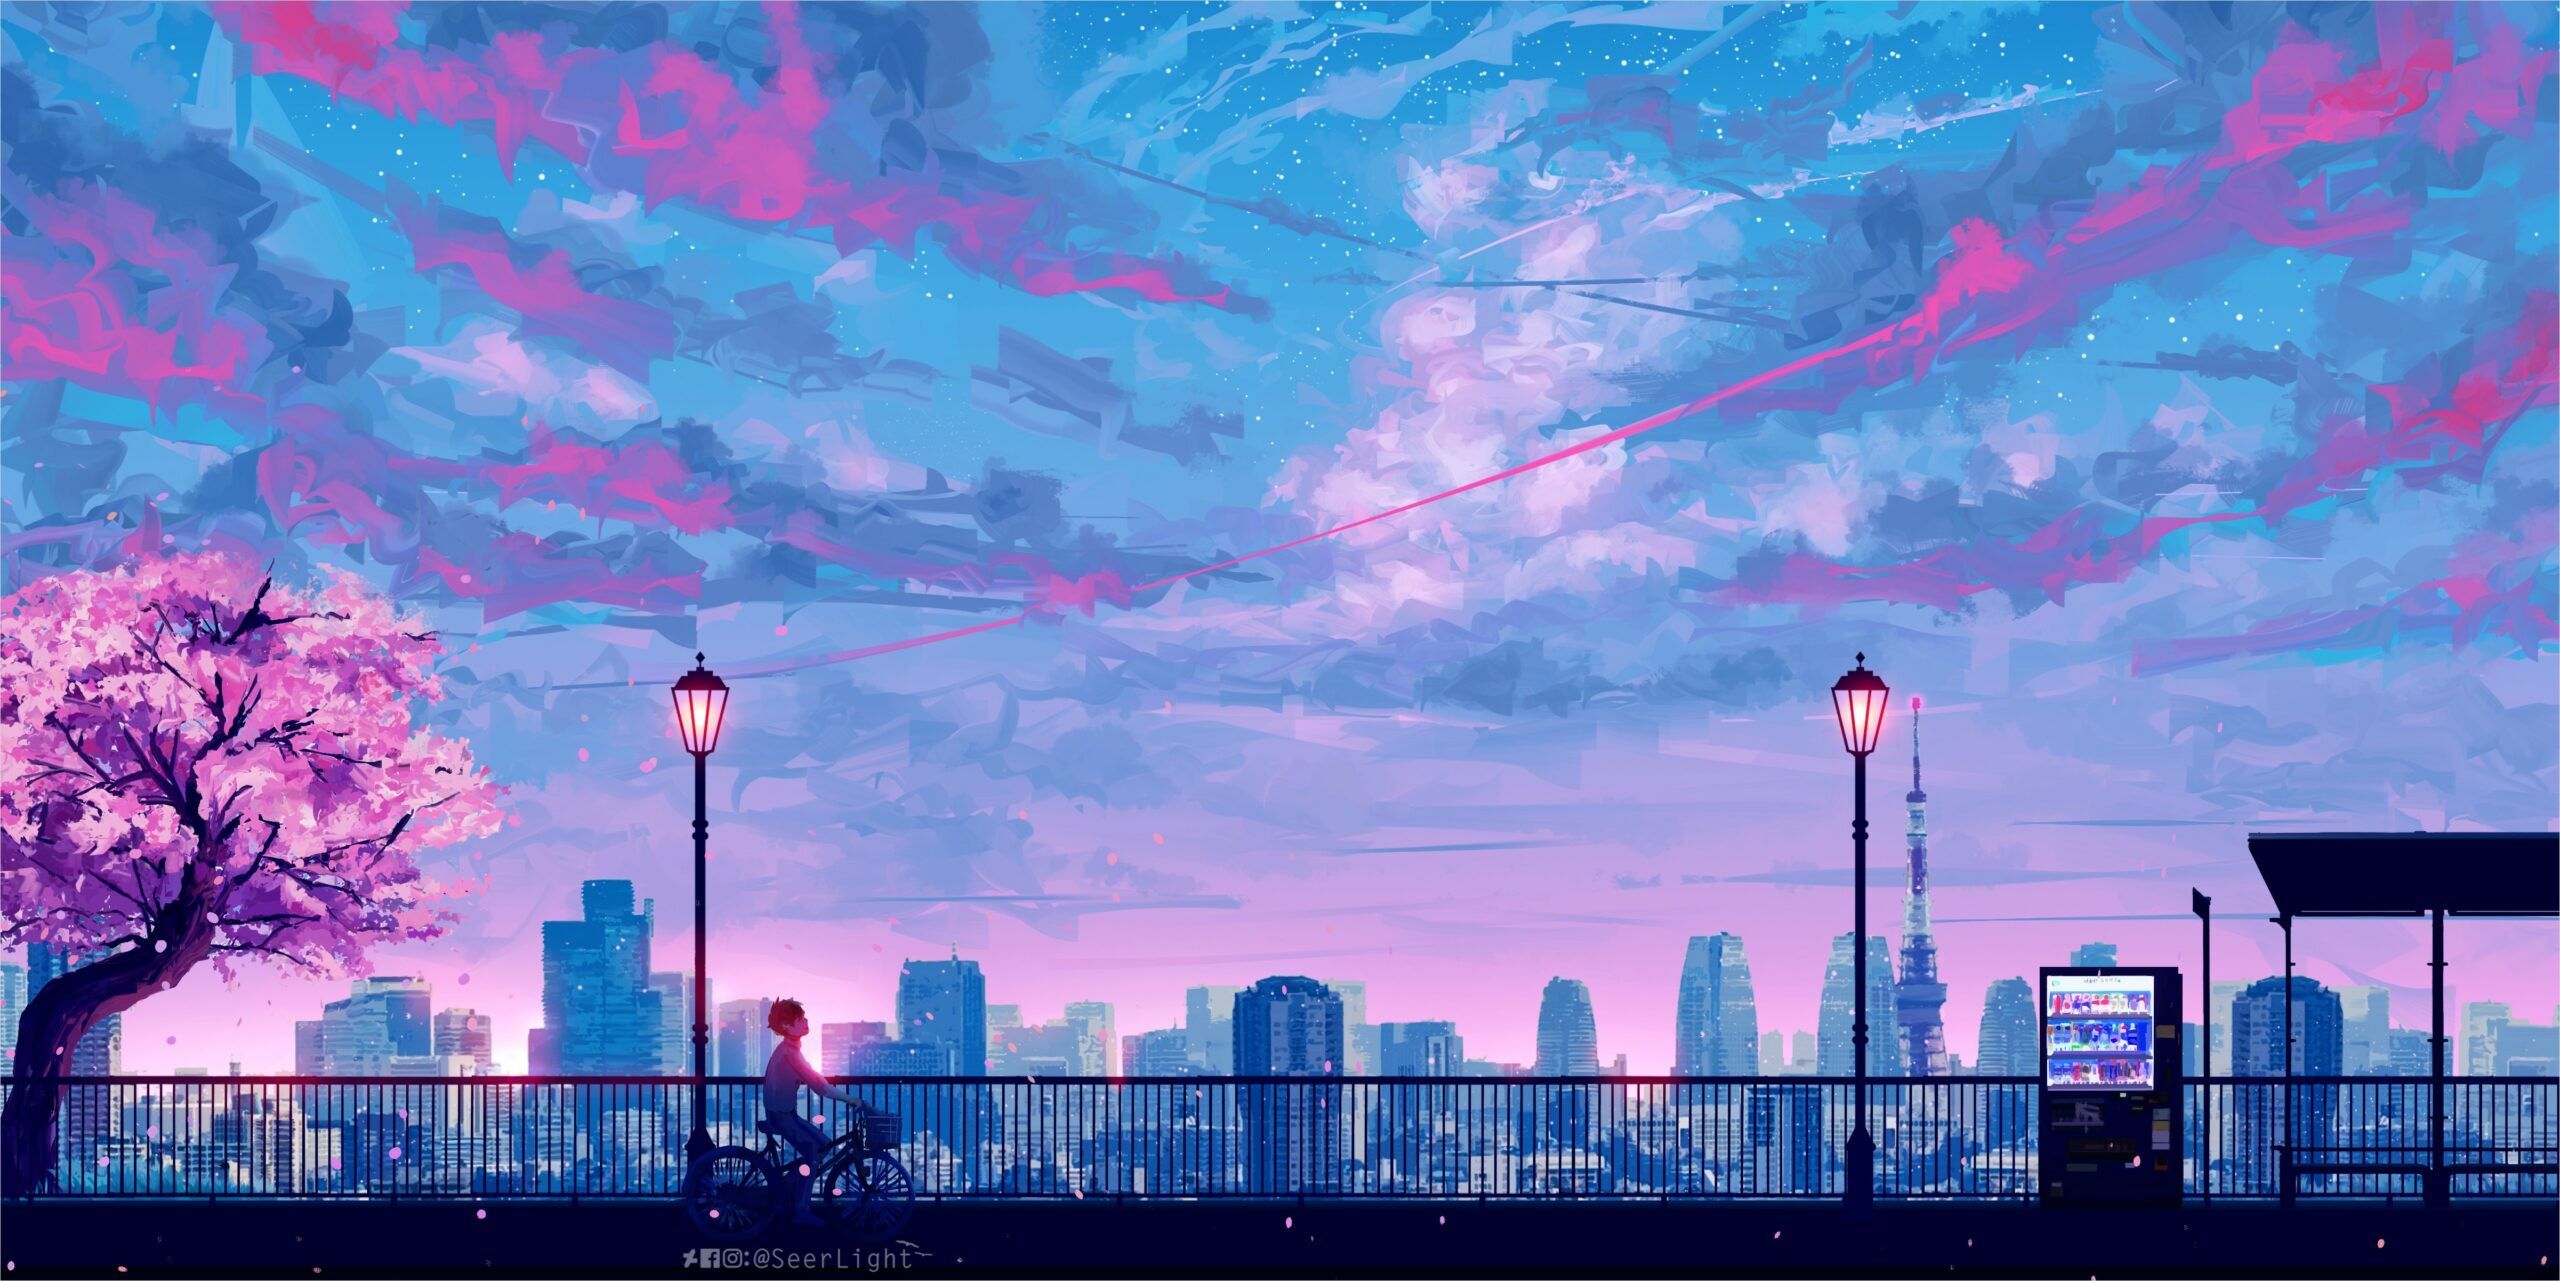 4k Anime Landscape Wallpaper. Aesthetic desktop wallpaper, Desktop wallpaper art, Scenery wallpaper